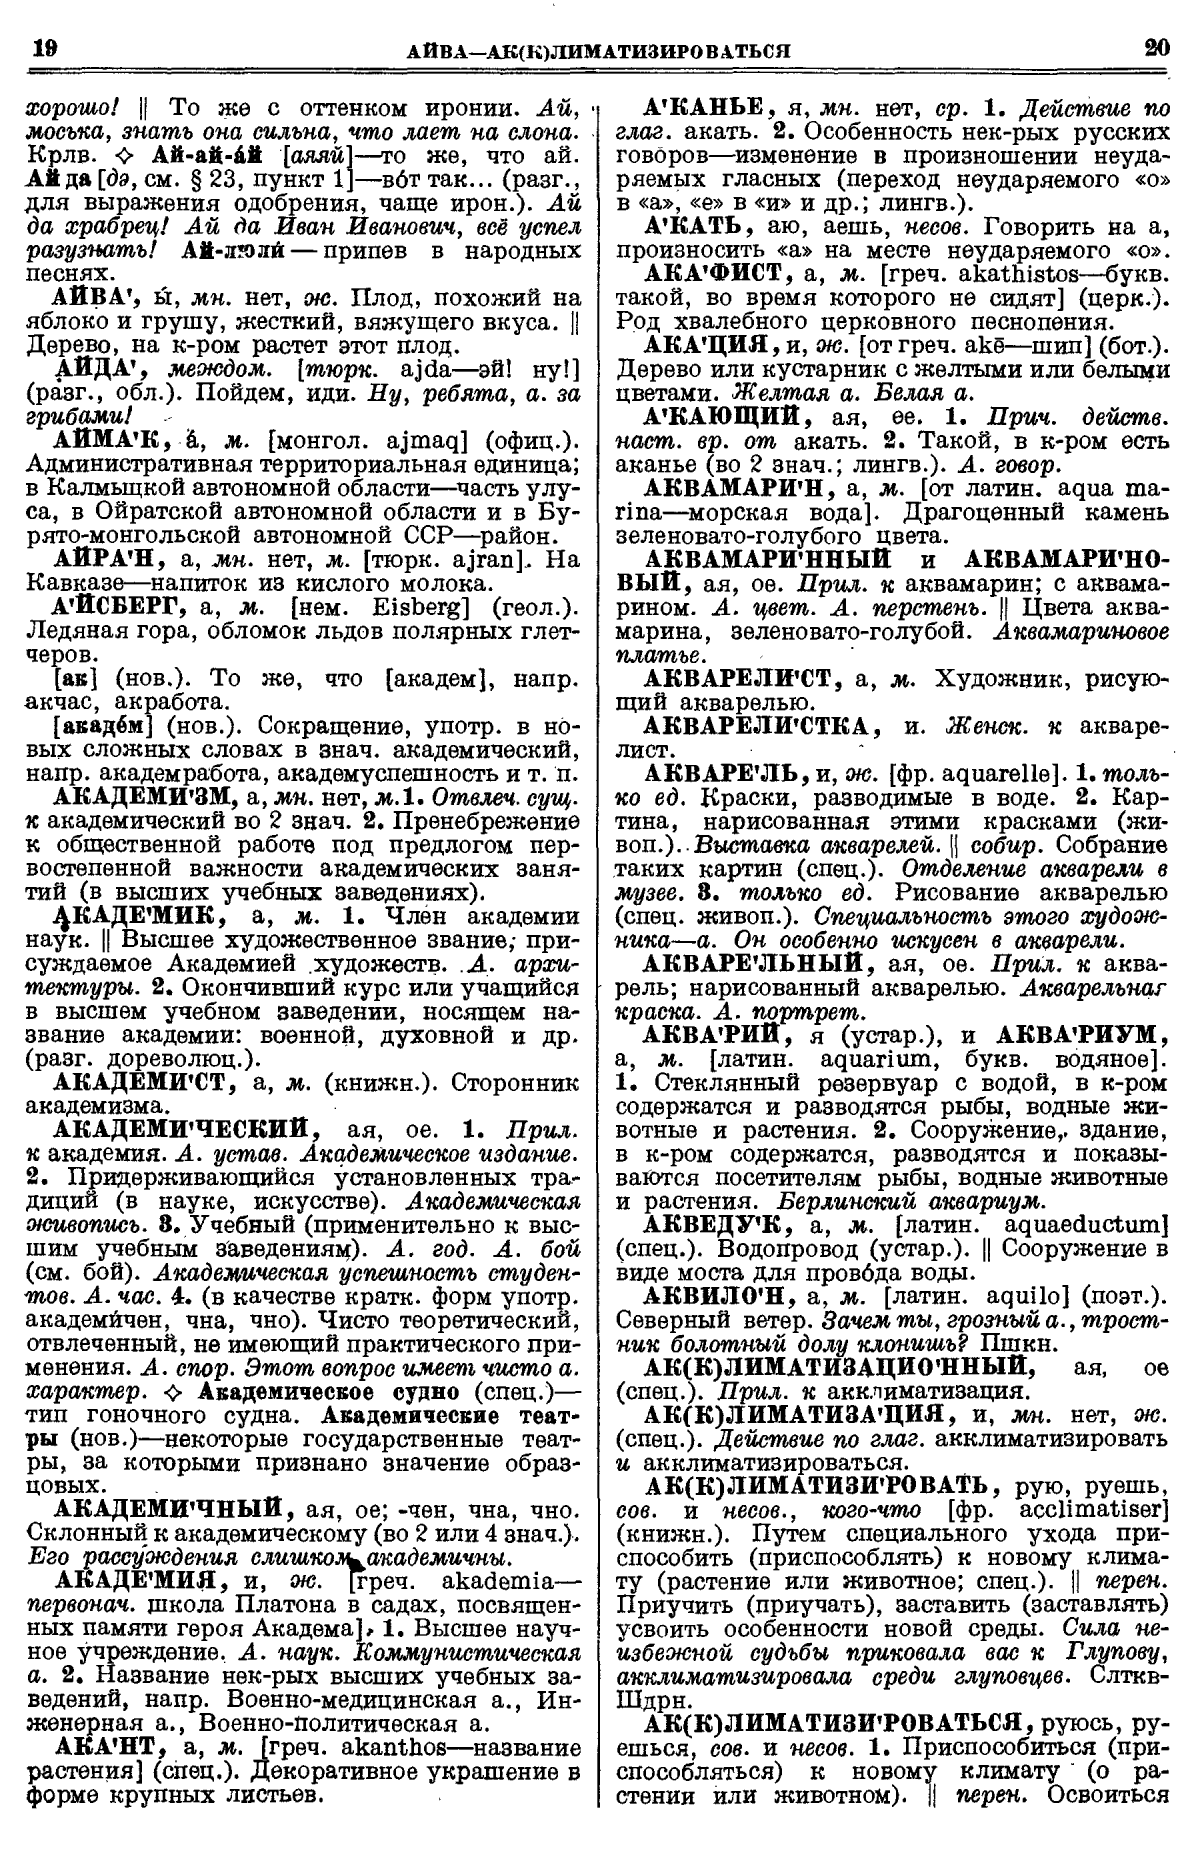 Фотокопия pdf / скан страницы 48 толкового словаря Ушакова (том 1)